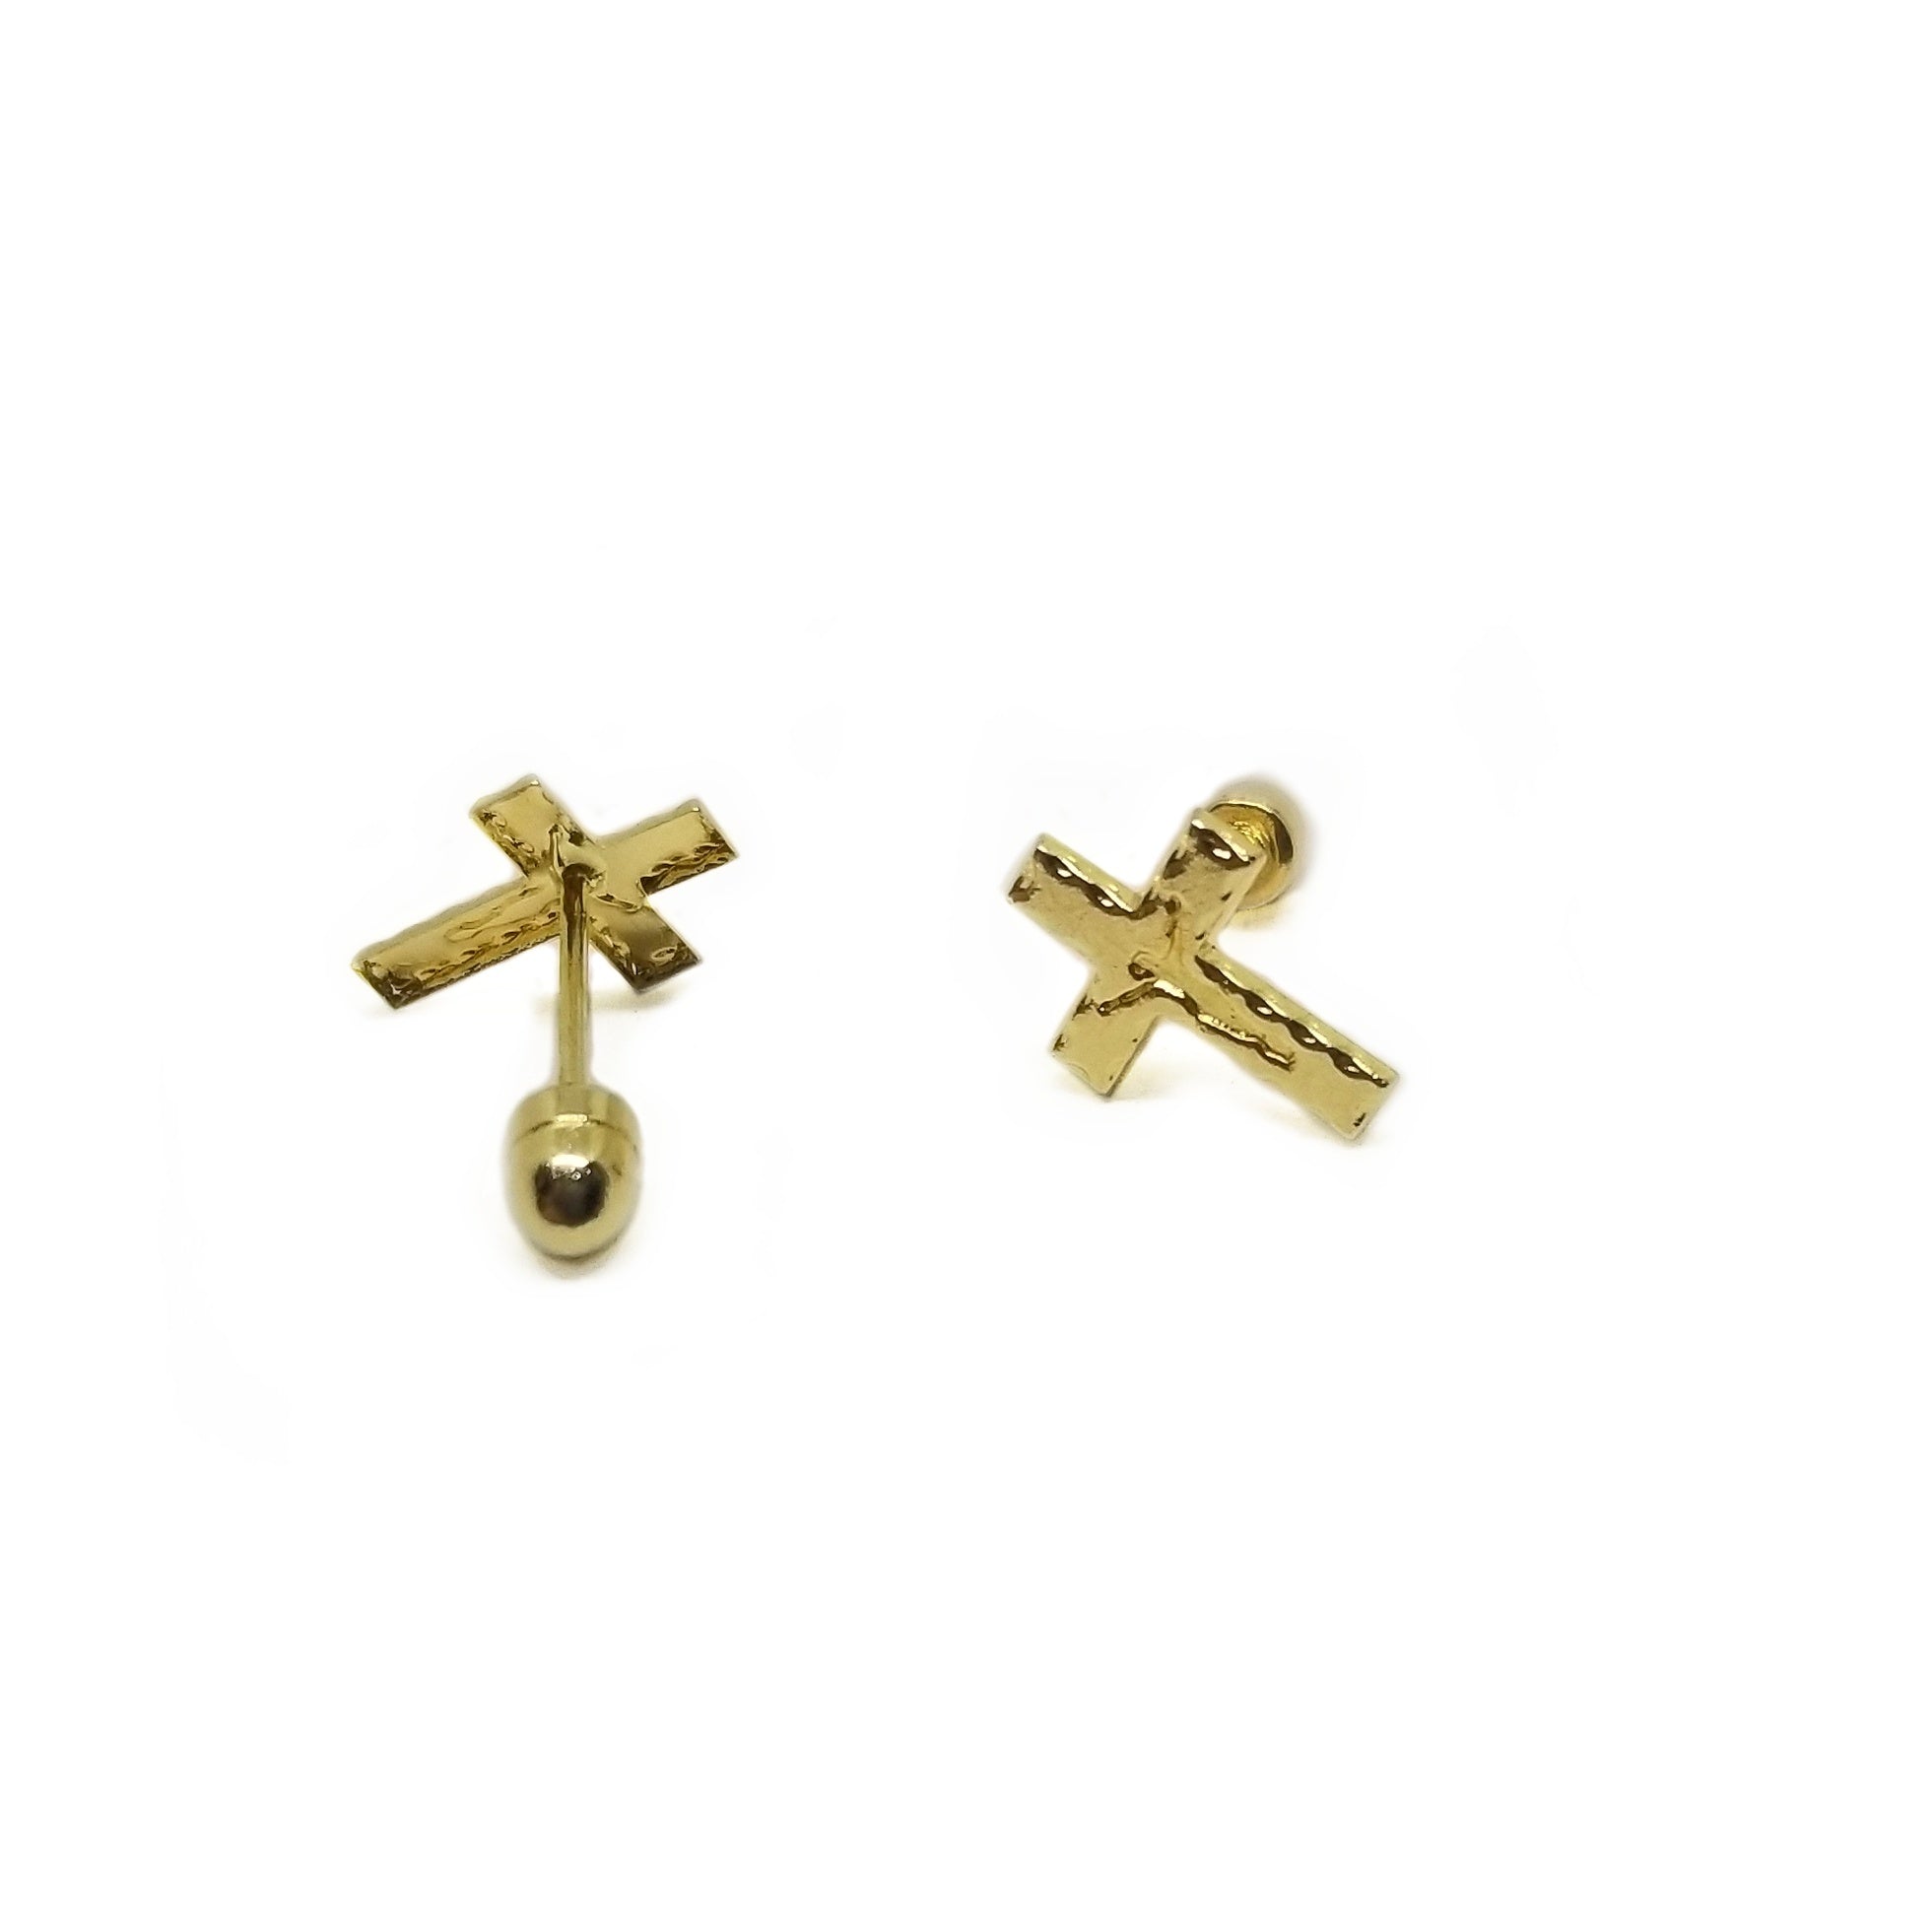 Baby earrings in 14k yellow gold crosses